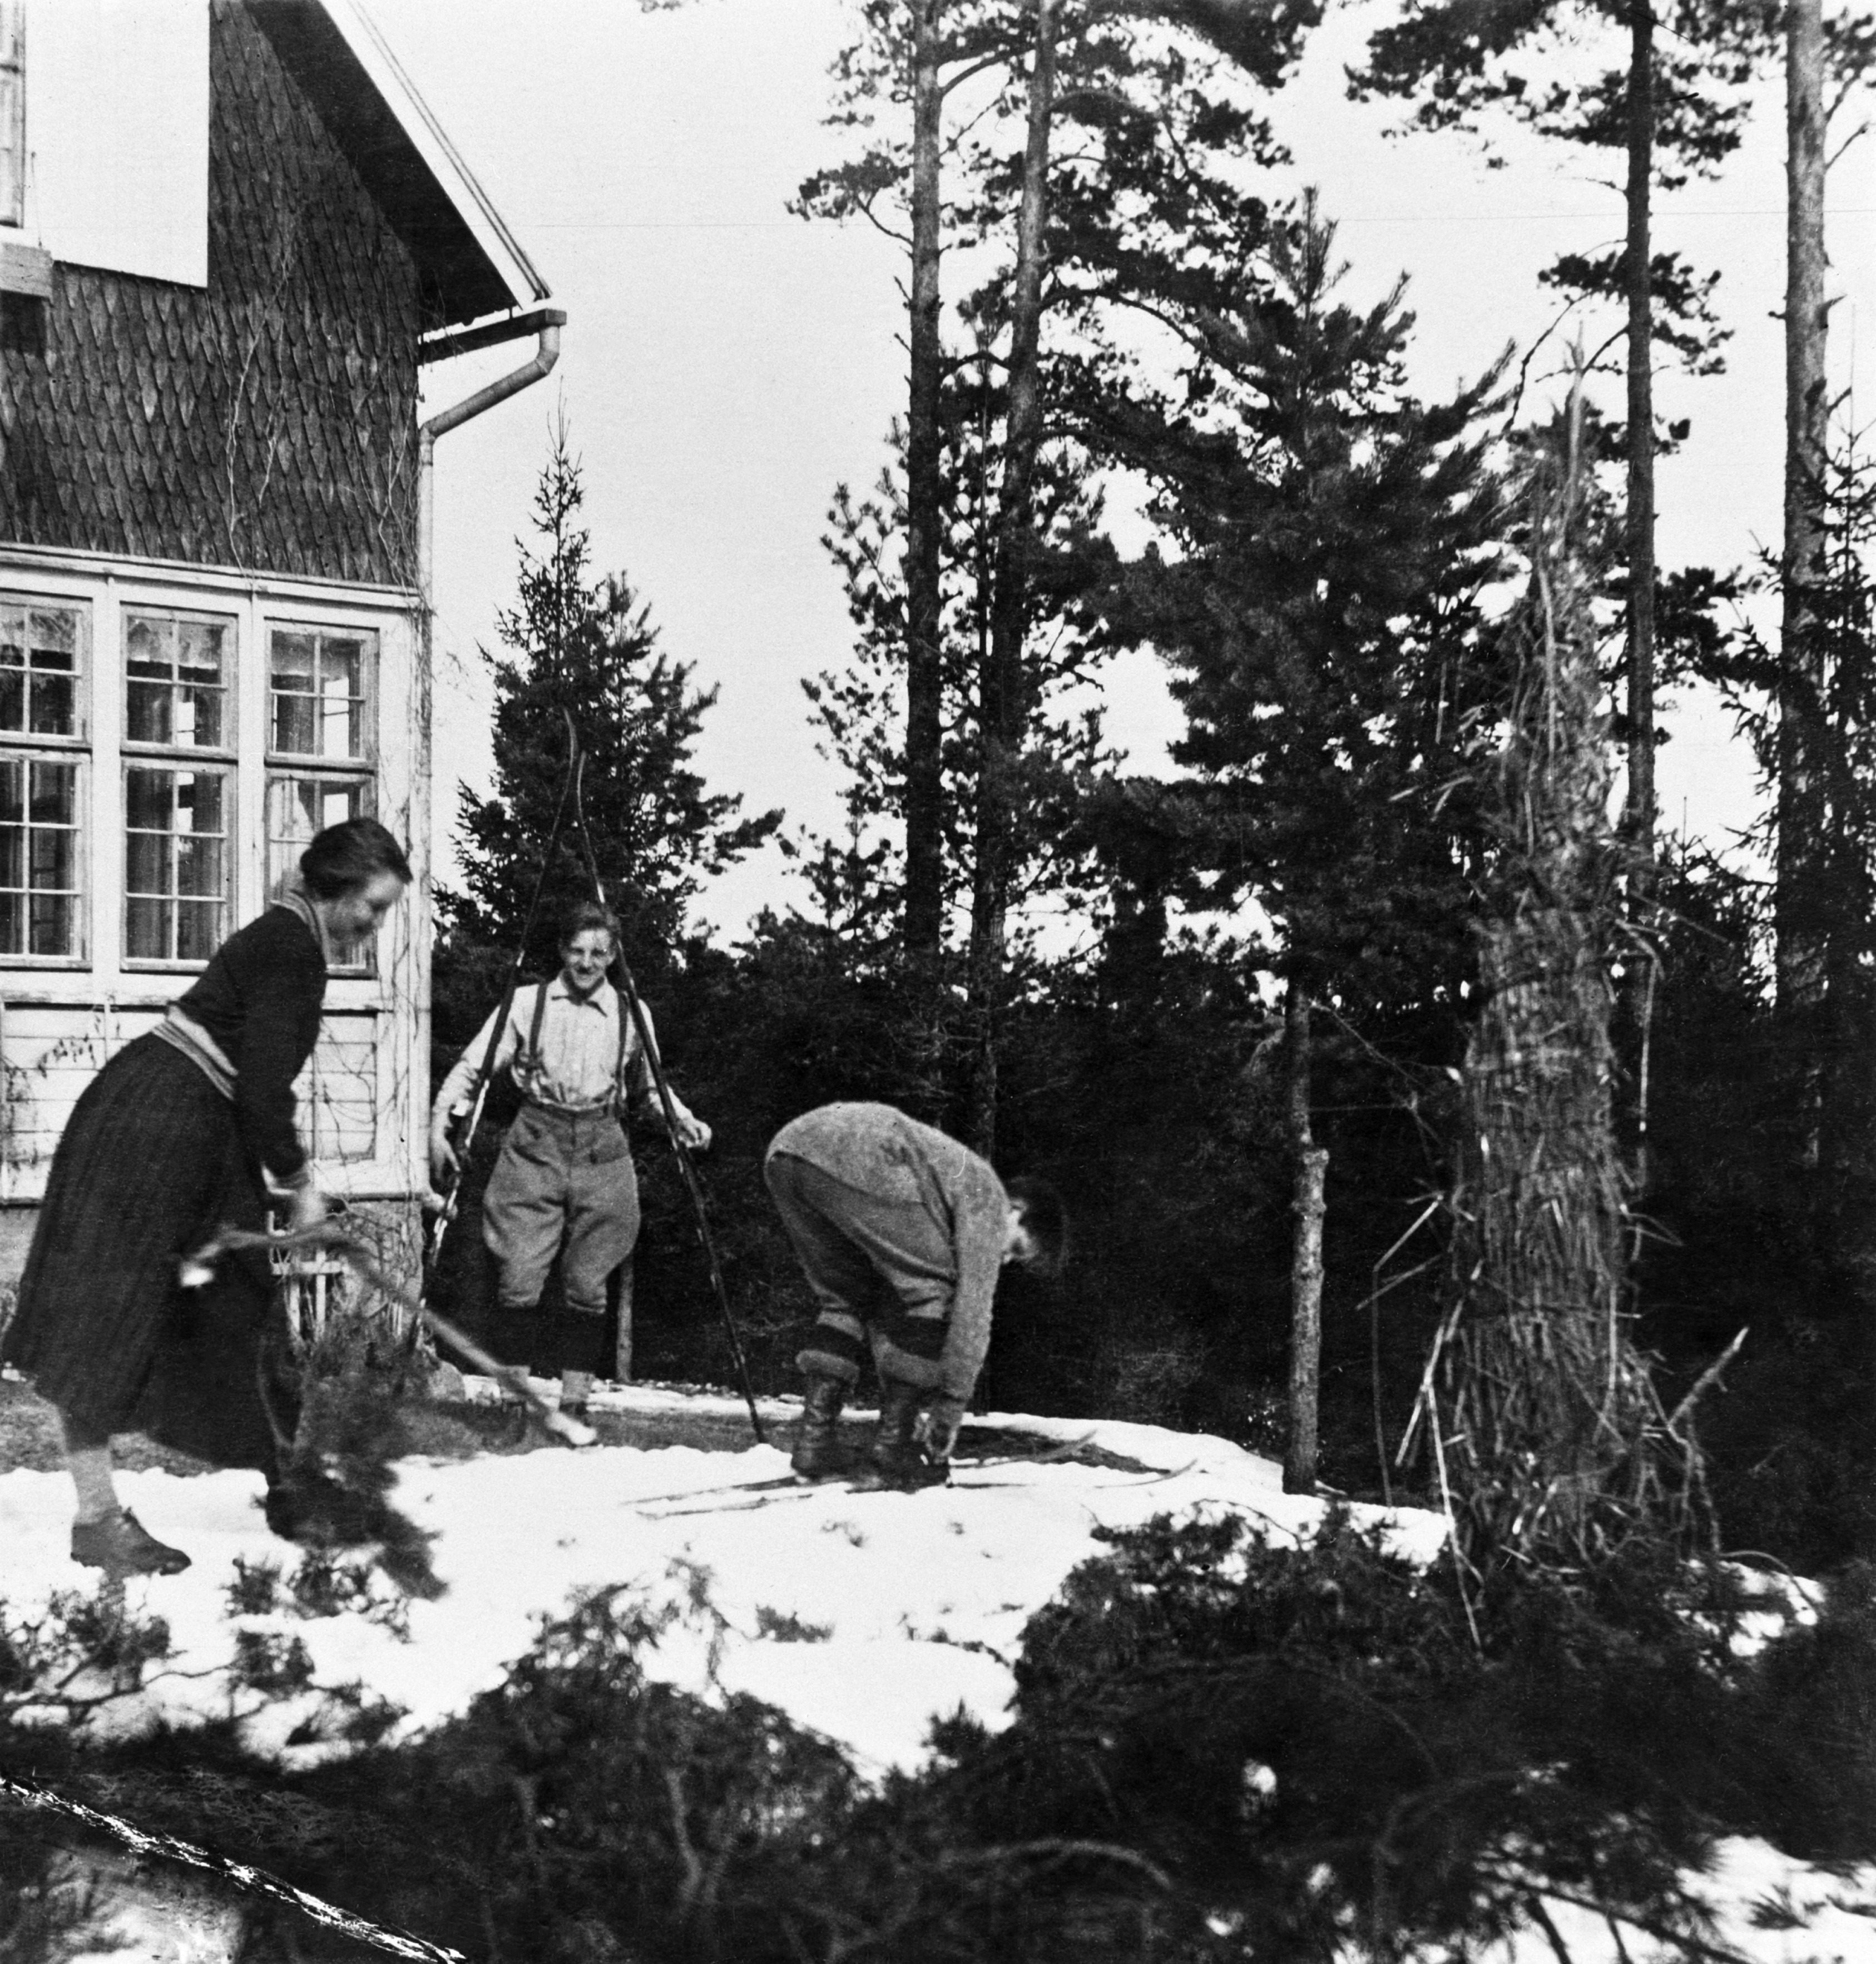 Nuoria lähdössä laskemaan mäkeä suksilla huvila Åsan pihalla pääsiäisenä 1923.